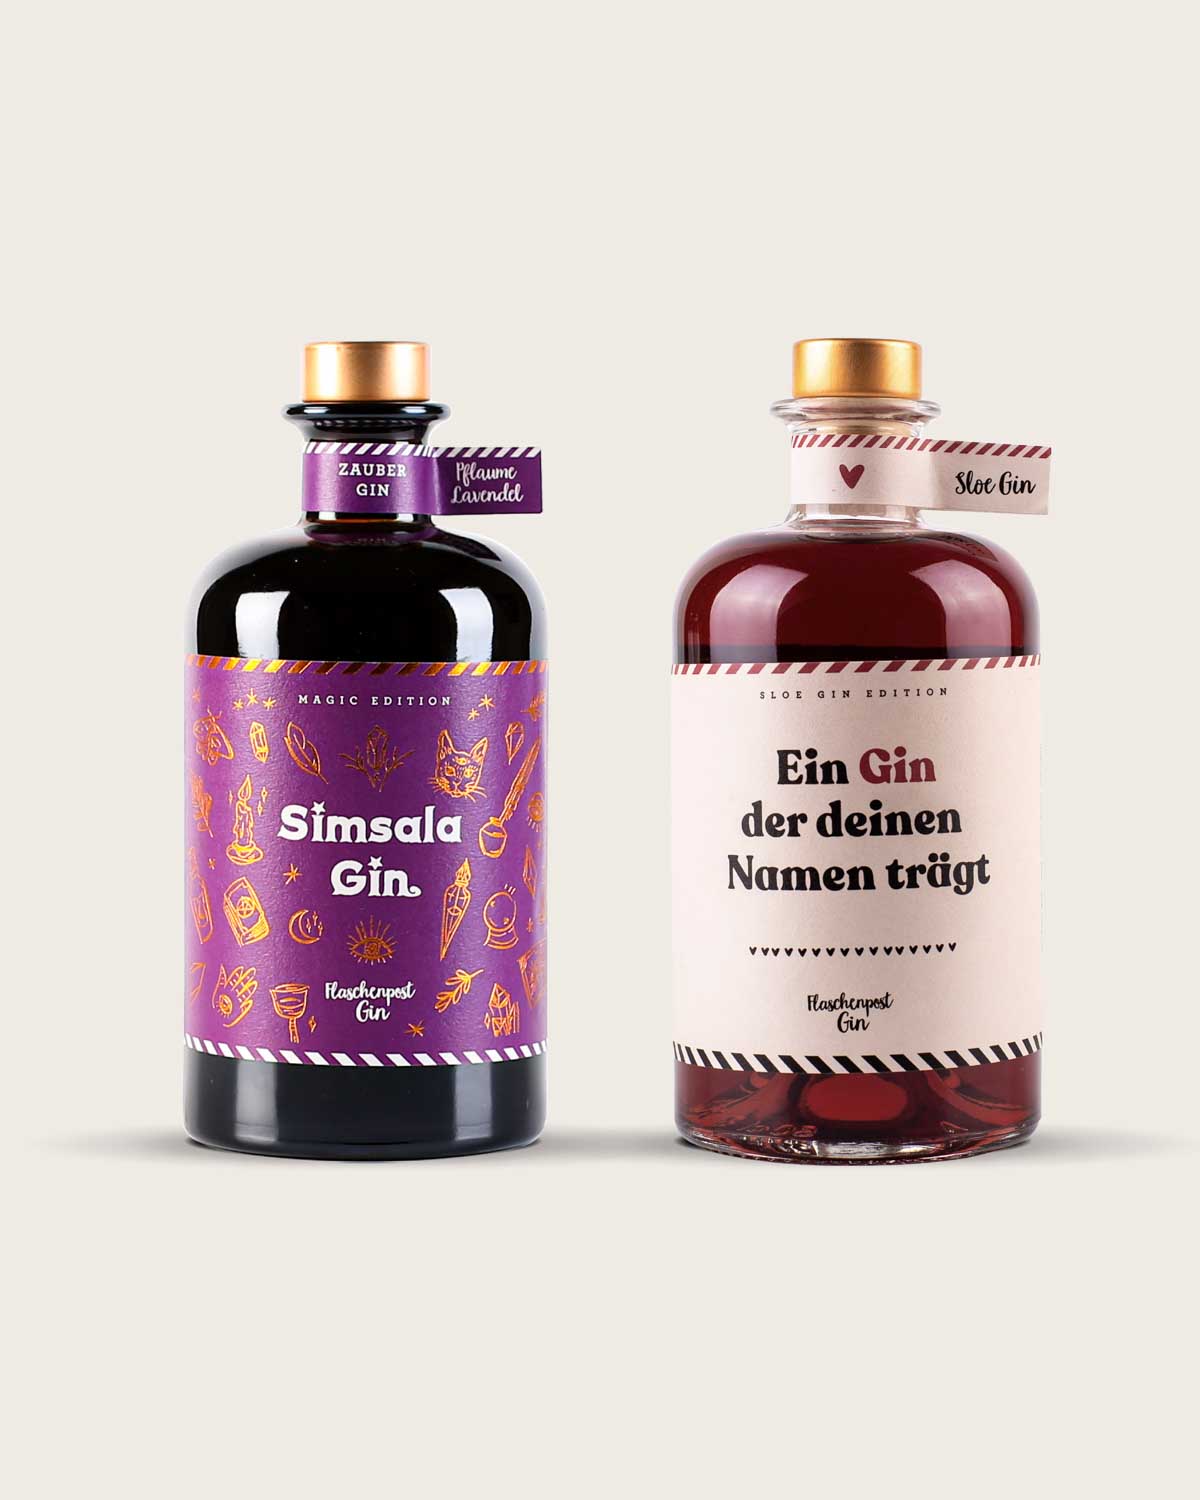 Das Magic Love Bundle von Flaschenpost Gin enthält den Farbwechsel Gin "Simsala Gin" und den Sloe gin mit DIY-Ettiket. Unser Sloe Gin aus Schlehenbeeren trägt auf dem Etikett den Spruch "Ein Gin der deinen Namen trägt" mit einem Platzhalter für einen Namen. 